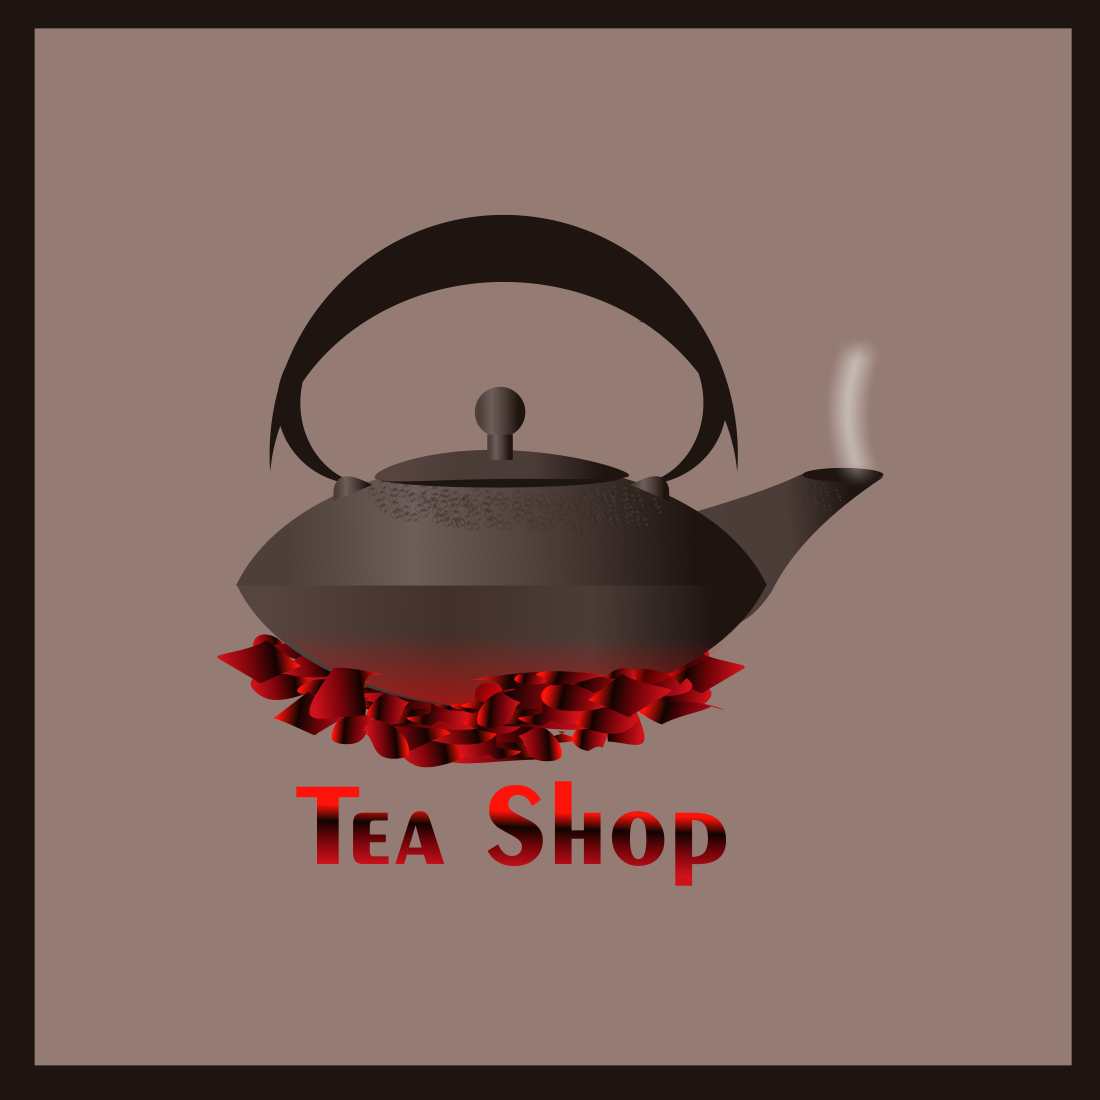 Free Tea Logo Designs - DIY Tea Logo Maker - Designmantic.com